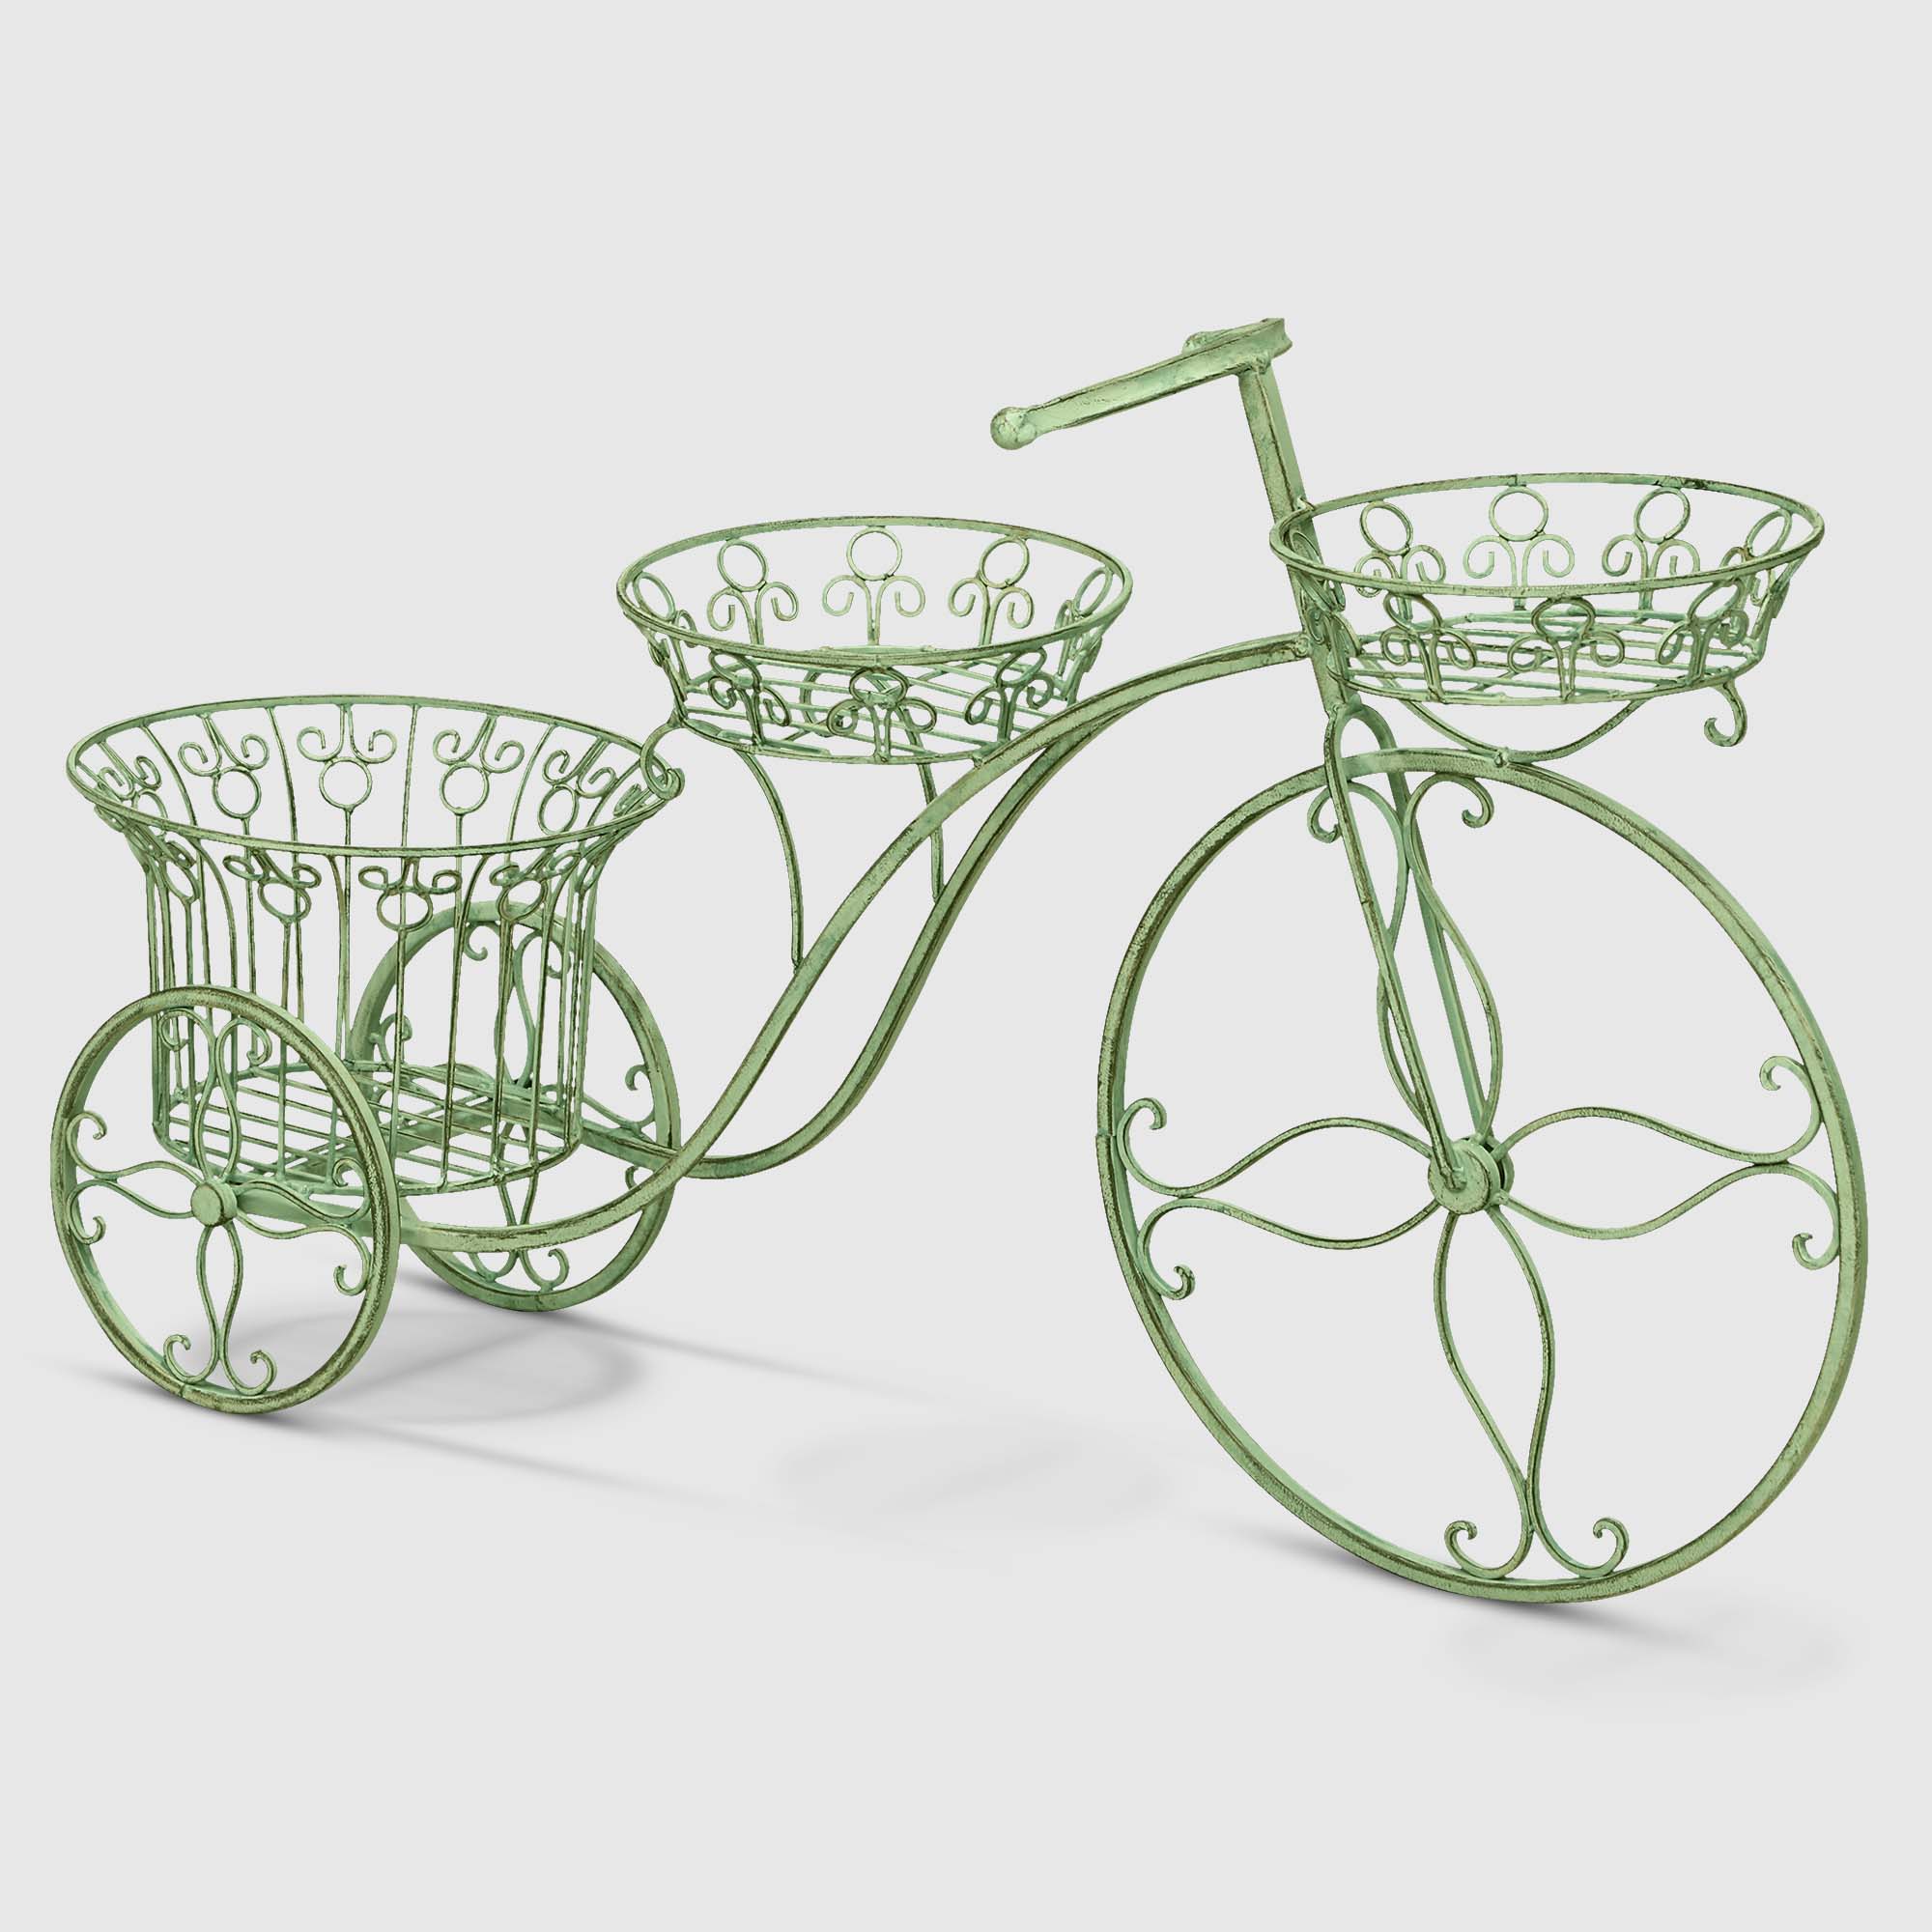 Подставка для цветов Anxi jiacheng велосипед оливковый 95x53x27 см подставка для цветов доляна